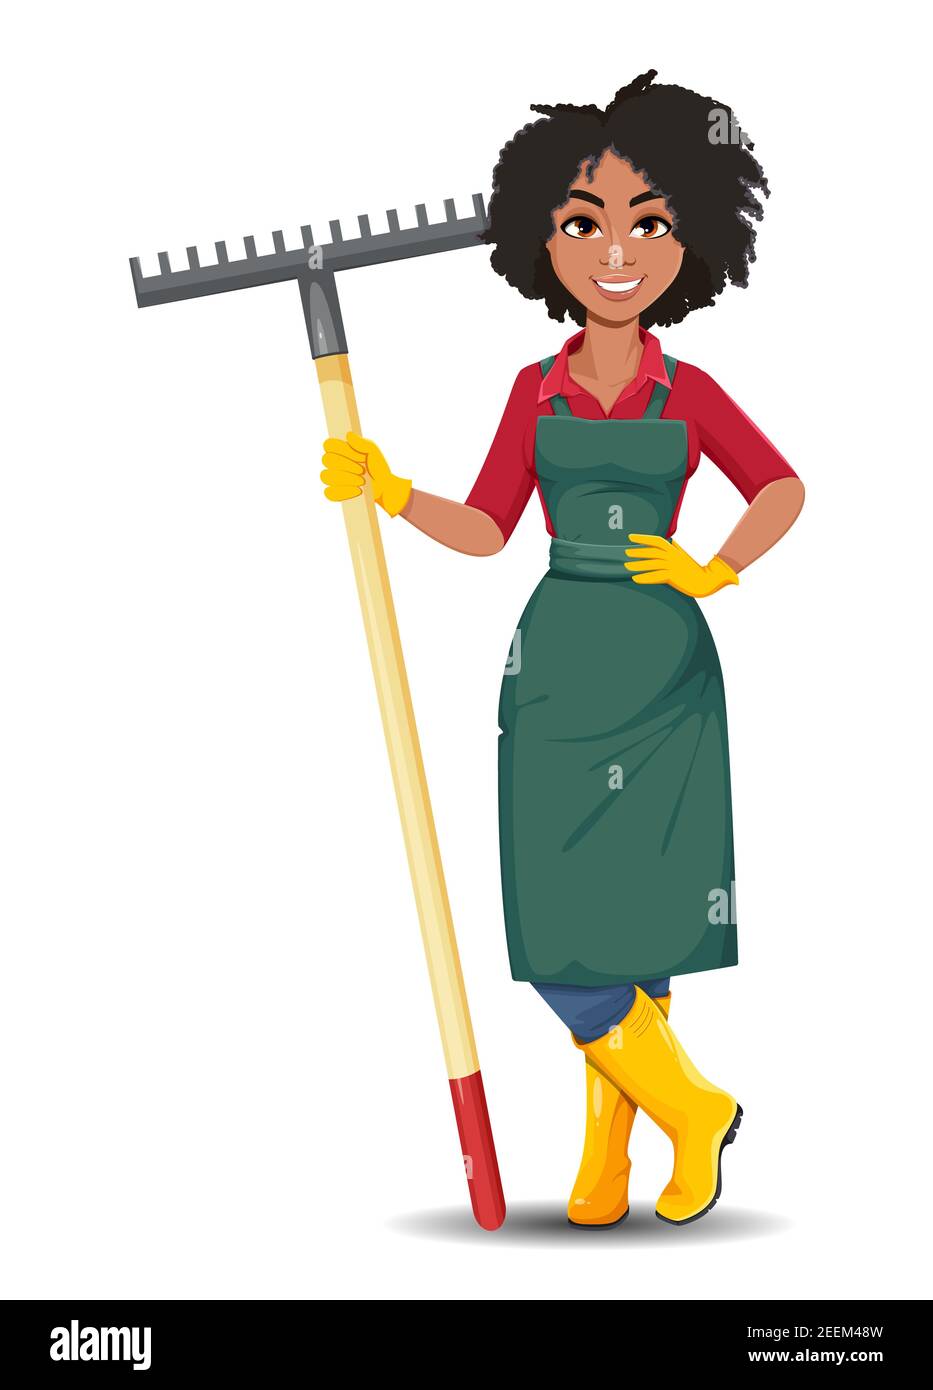 Vecteur boursier jeune femme jardinière afro-américaine. Belle dame paysanne personnage de dessin animé tenant râteau Illustration de Vecteur